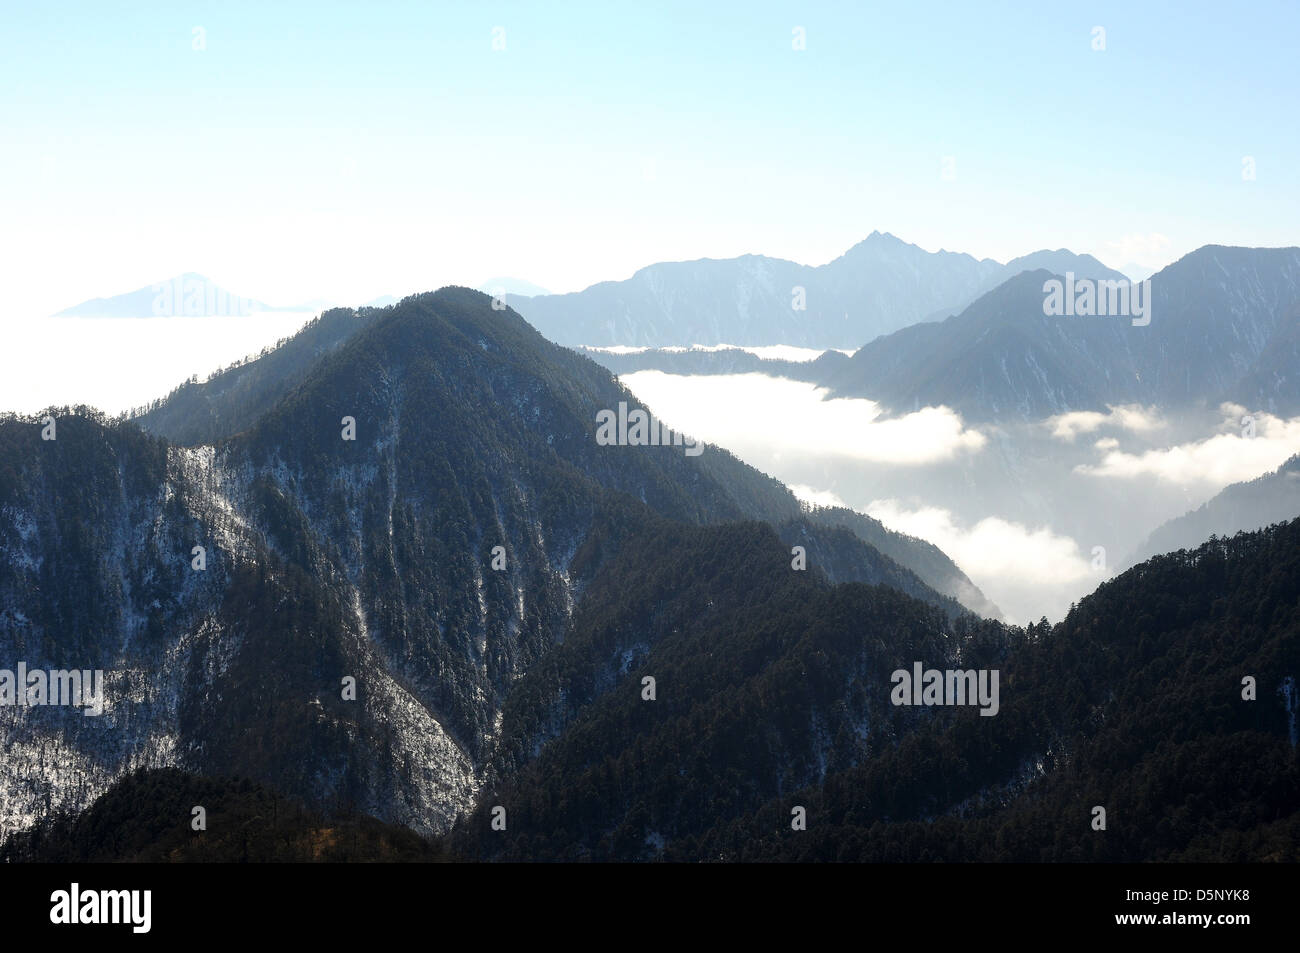 Landschaft Natur Reisen Baum Berg Himmelblau weiße Wolke Nebel Ansicht Landschaft landschaftlich Top hohen Schnee winter Stockfoto